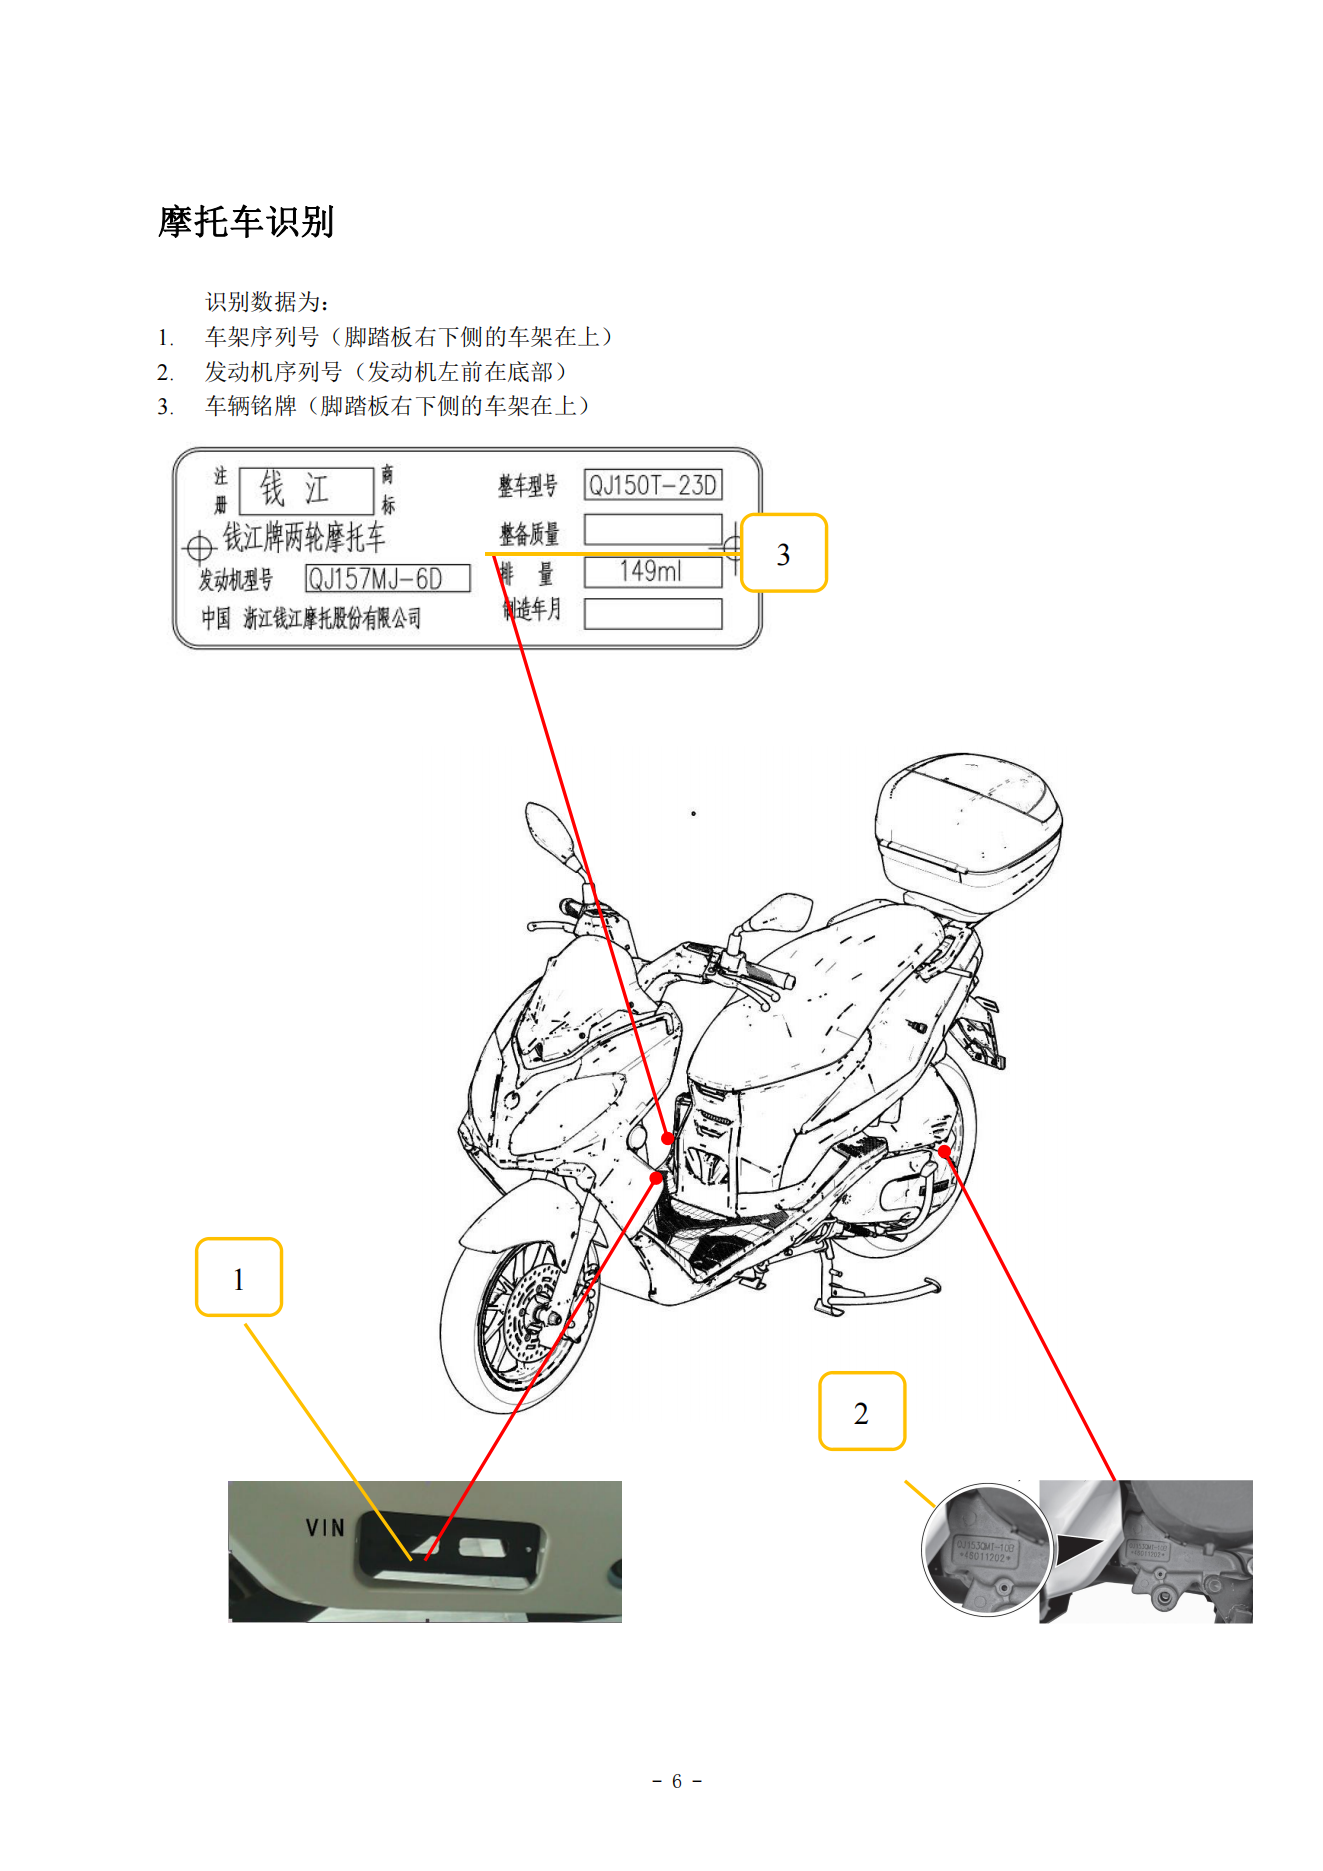 原版中文钱江大熊150 QJ150T-23D维修手册插图2